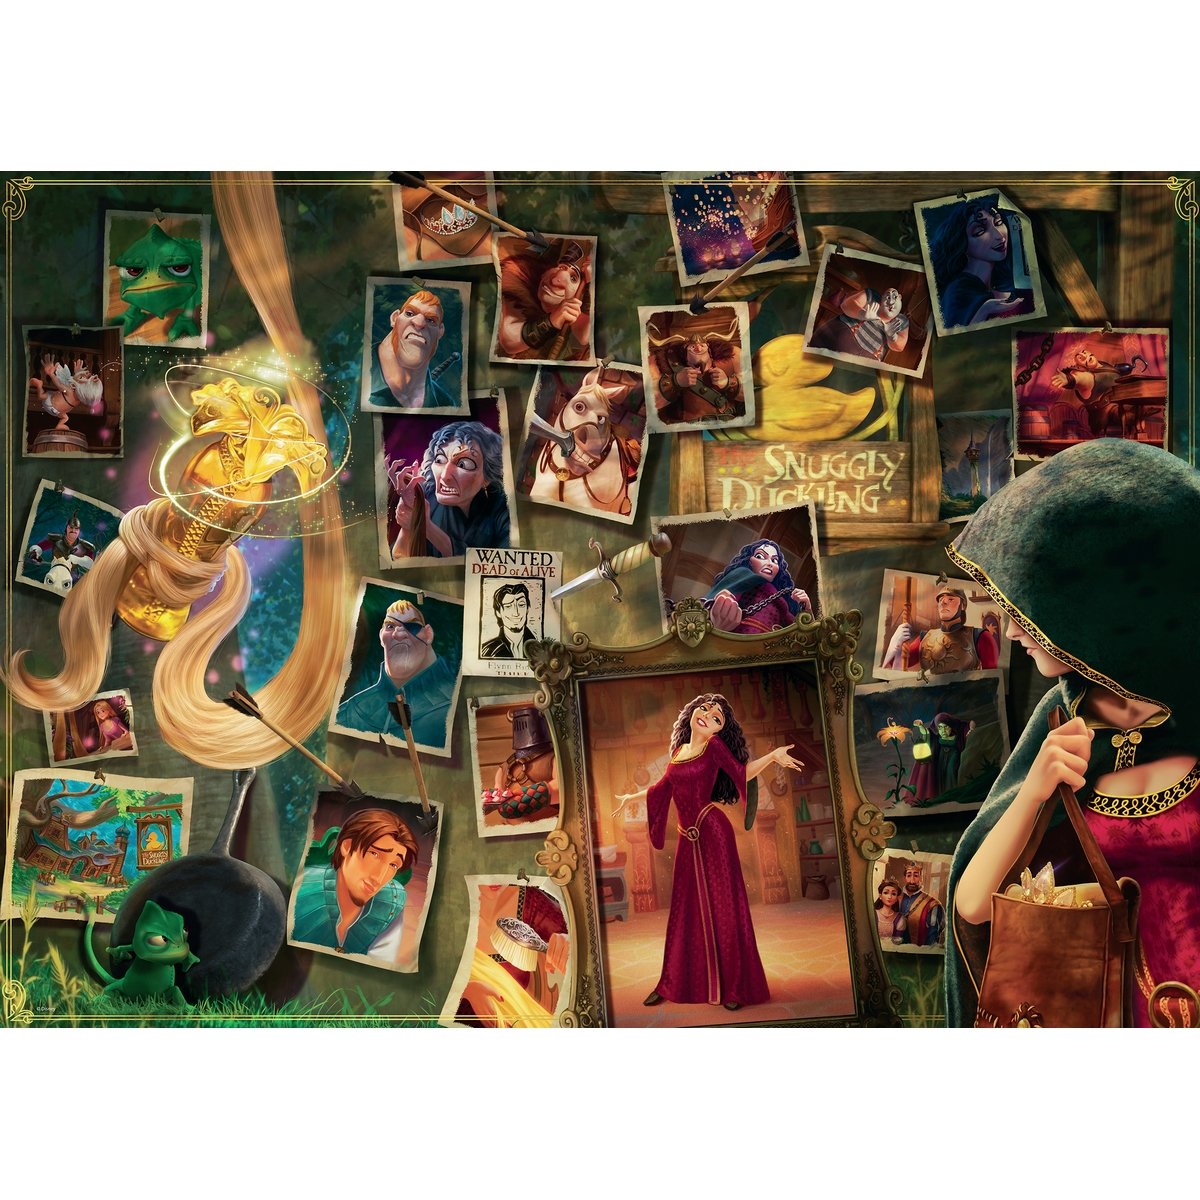 Vilains Disney : Puzzle 1000 pièces 🧩 Acheter